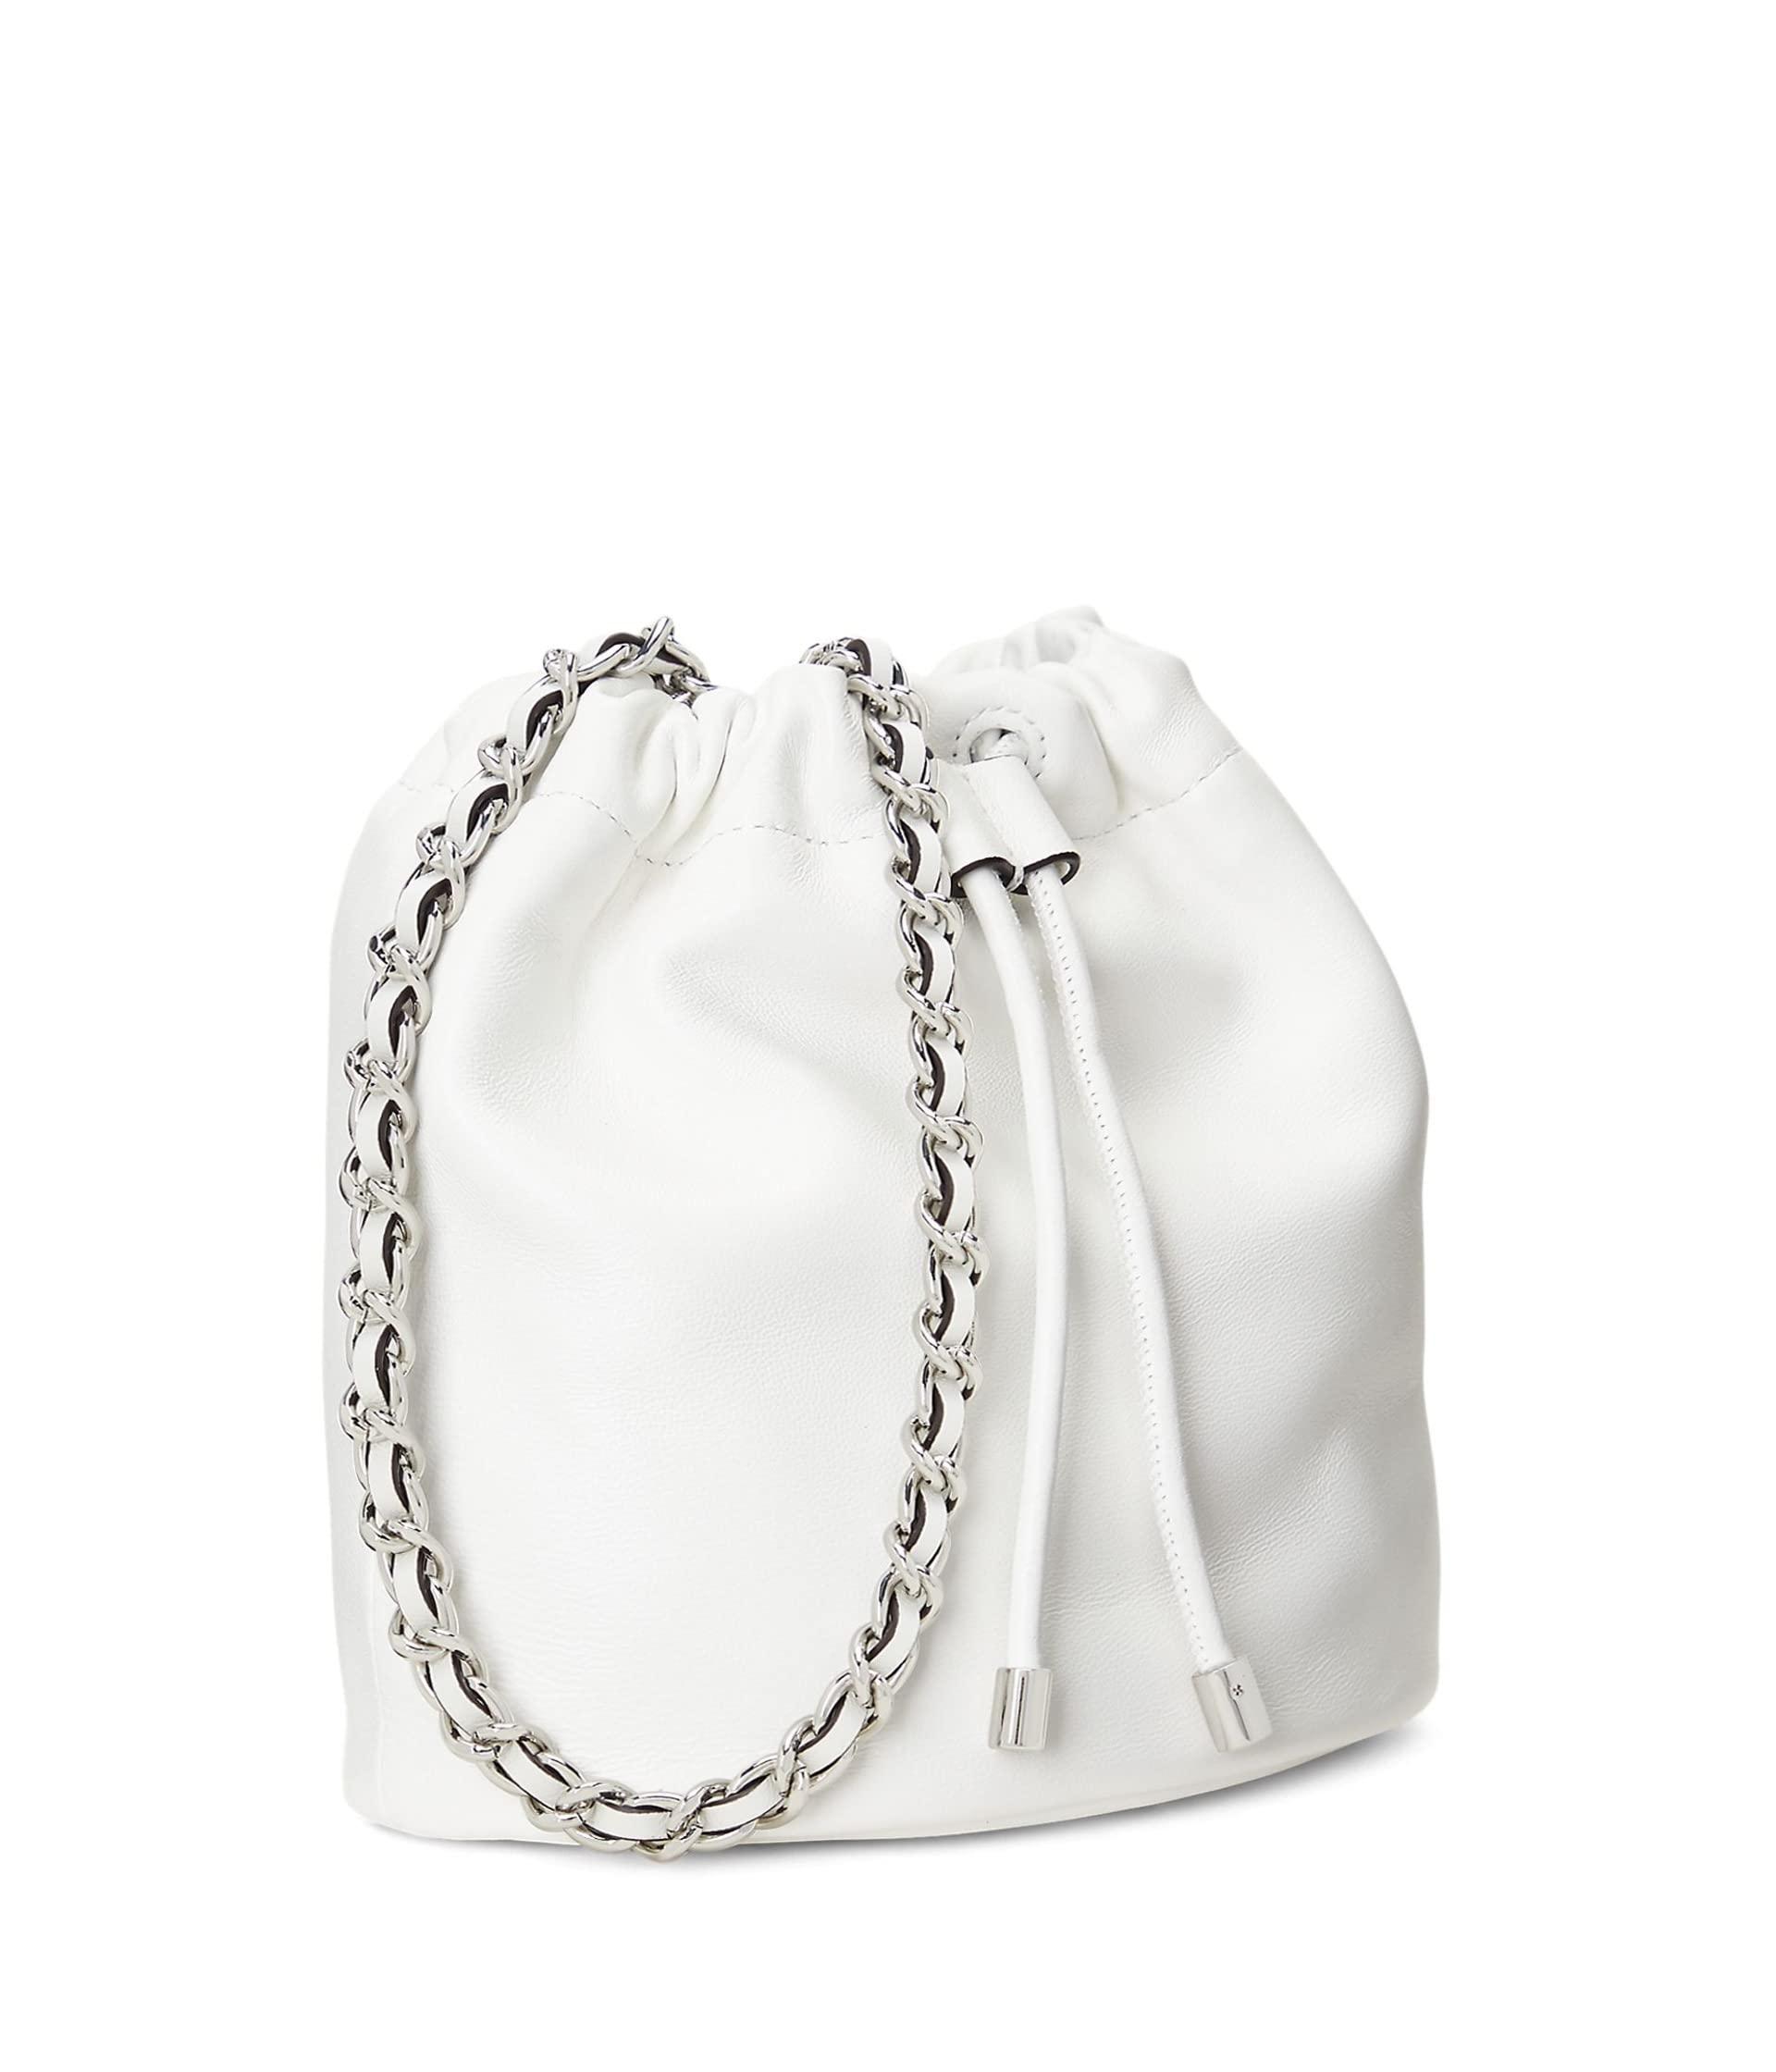 Lauren by Ralph Lauren Nappa Leather Medium Emmy Bucket Bag in White | Lyst